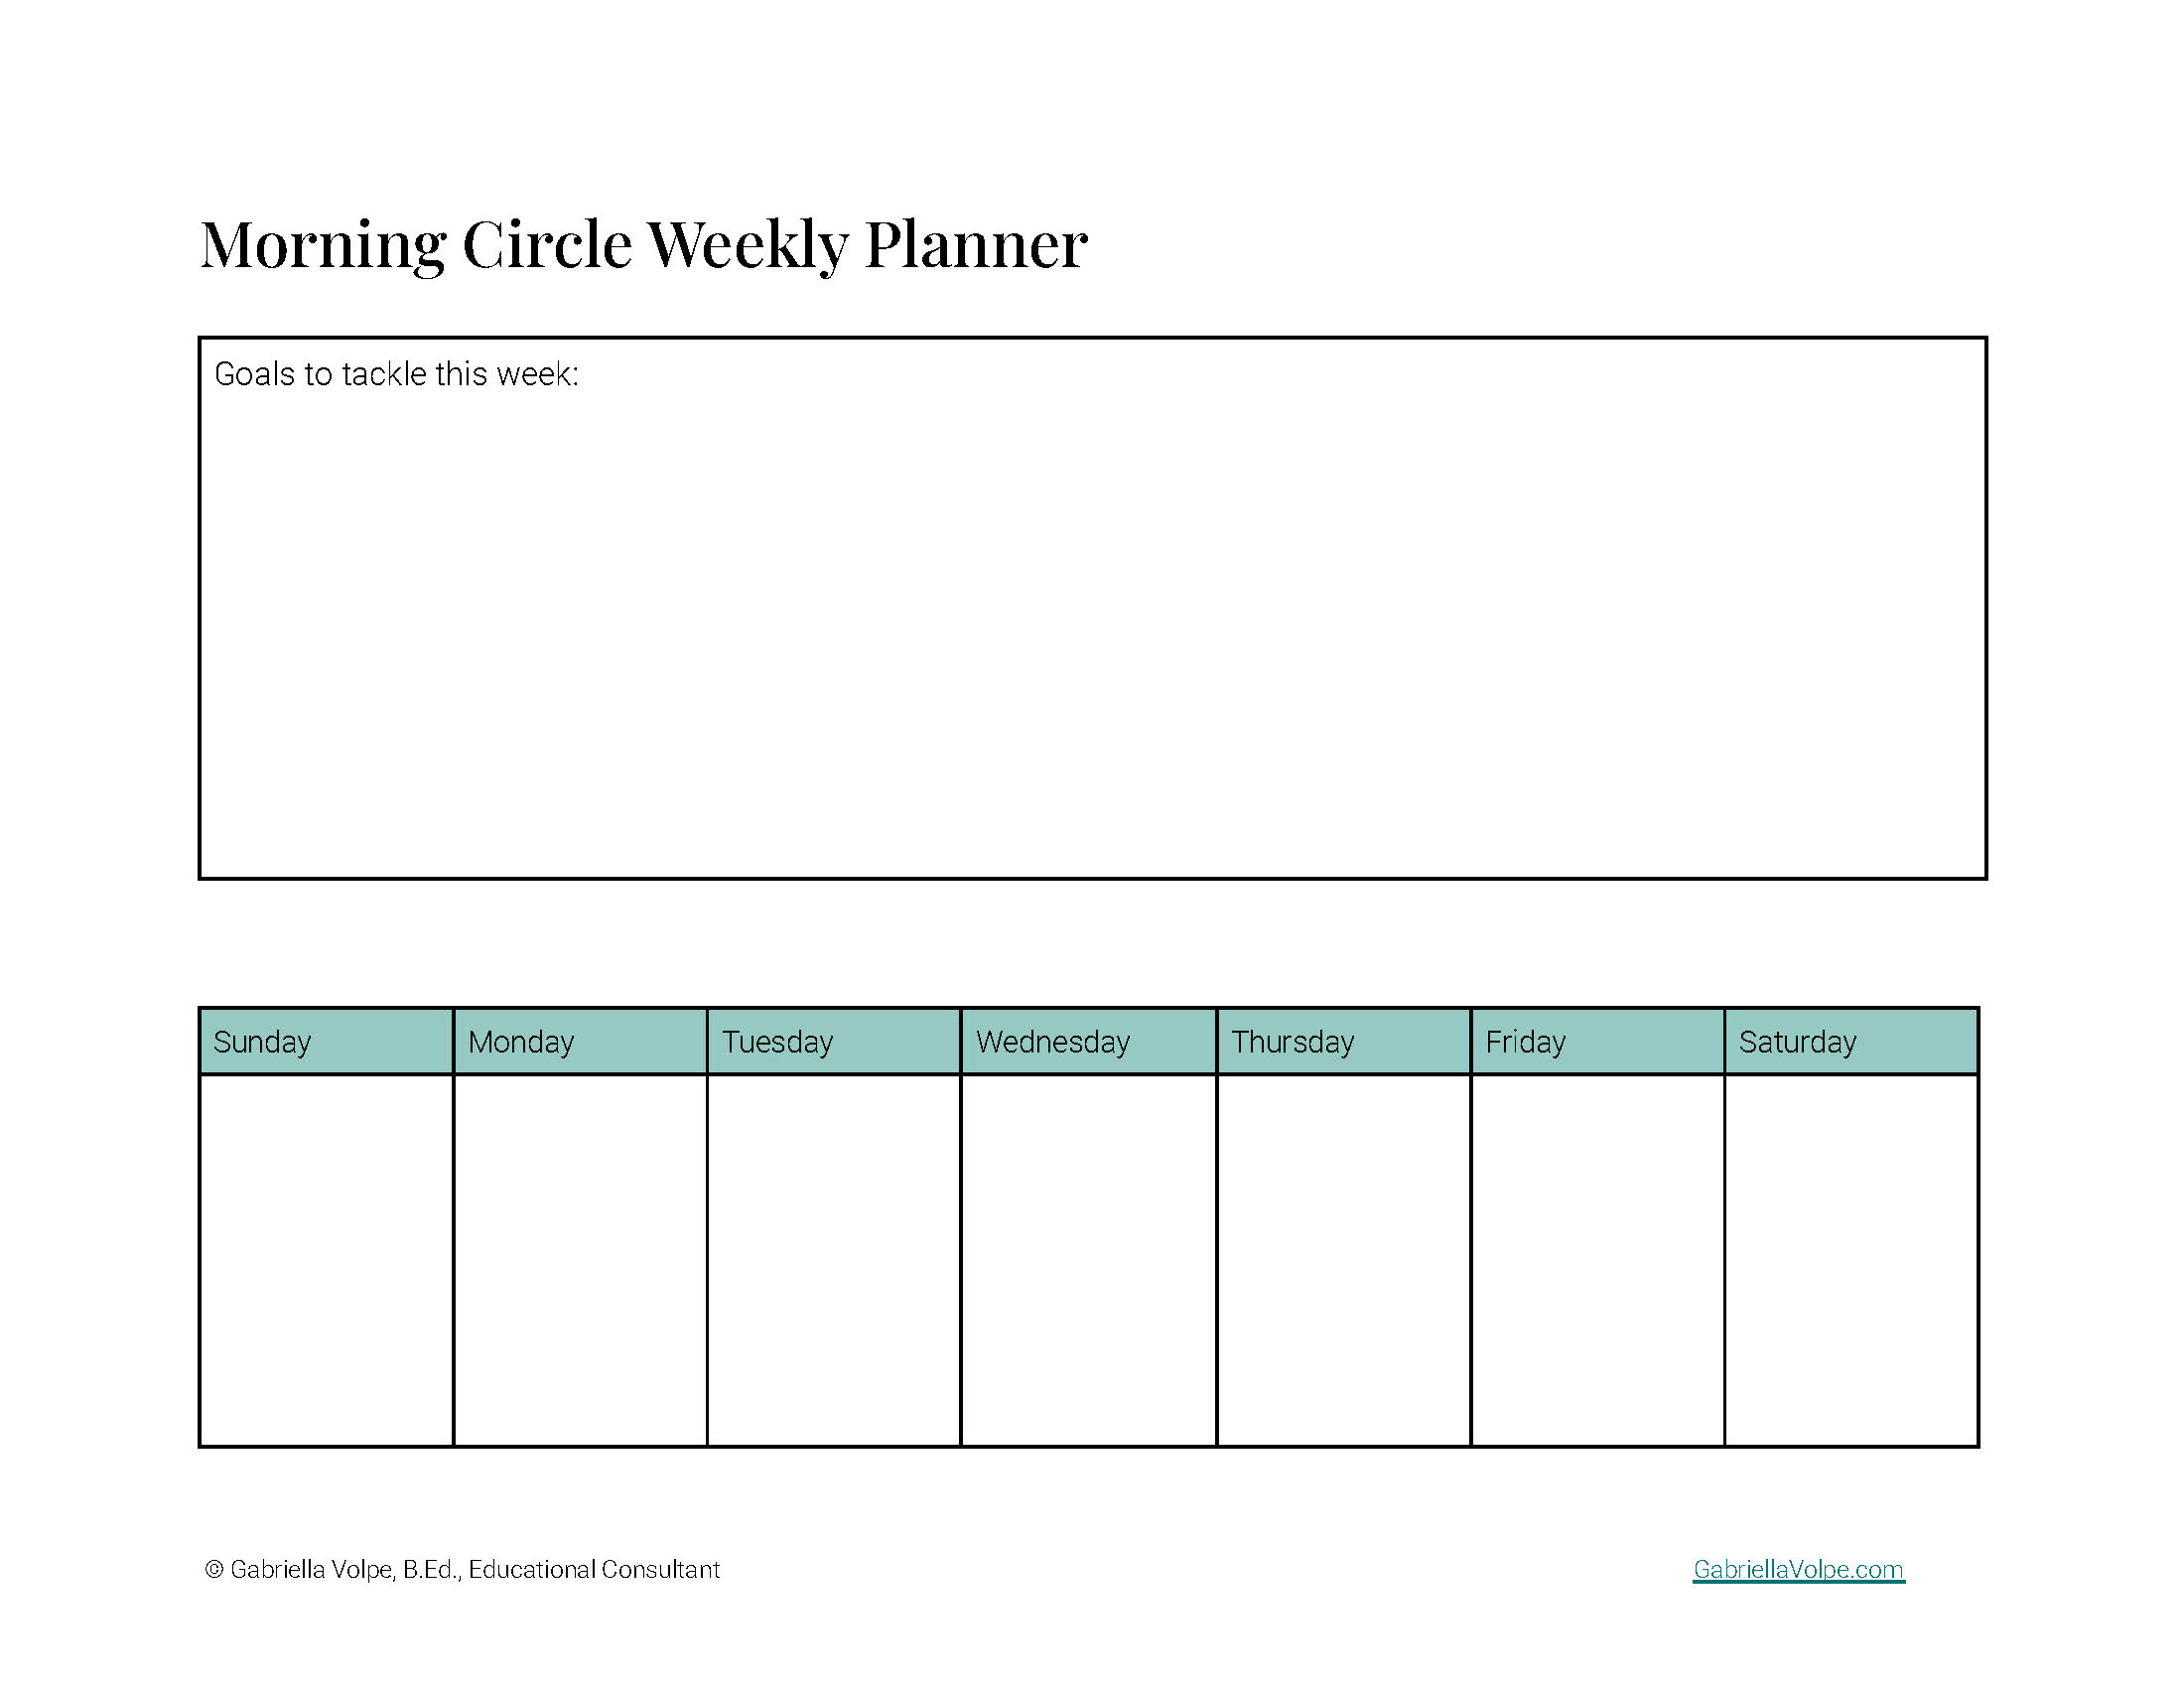 Weekly planner - goals and activities